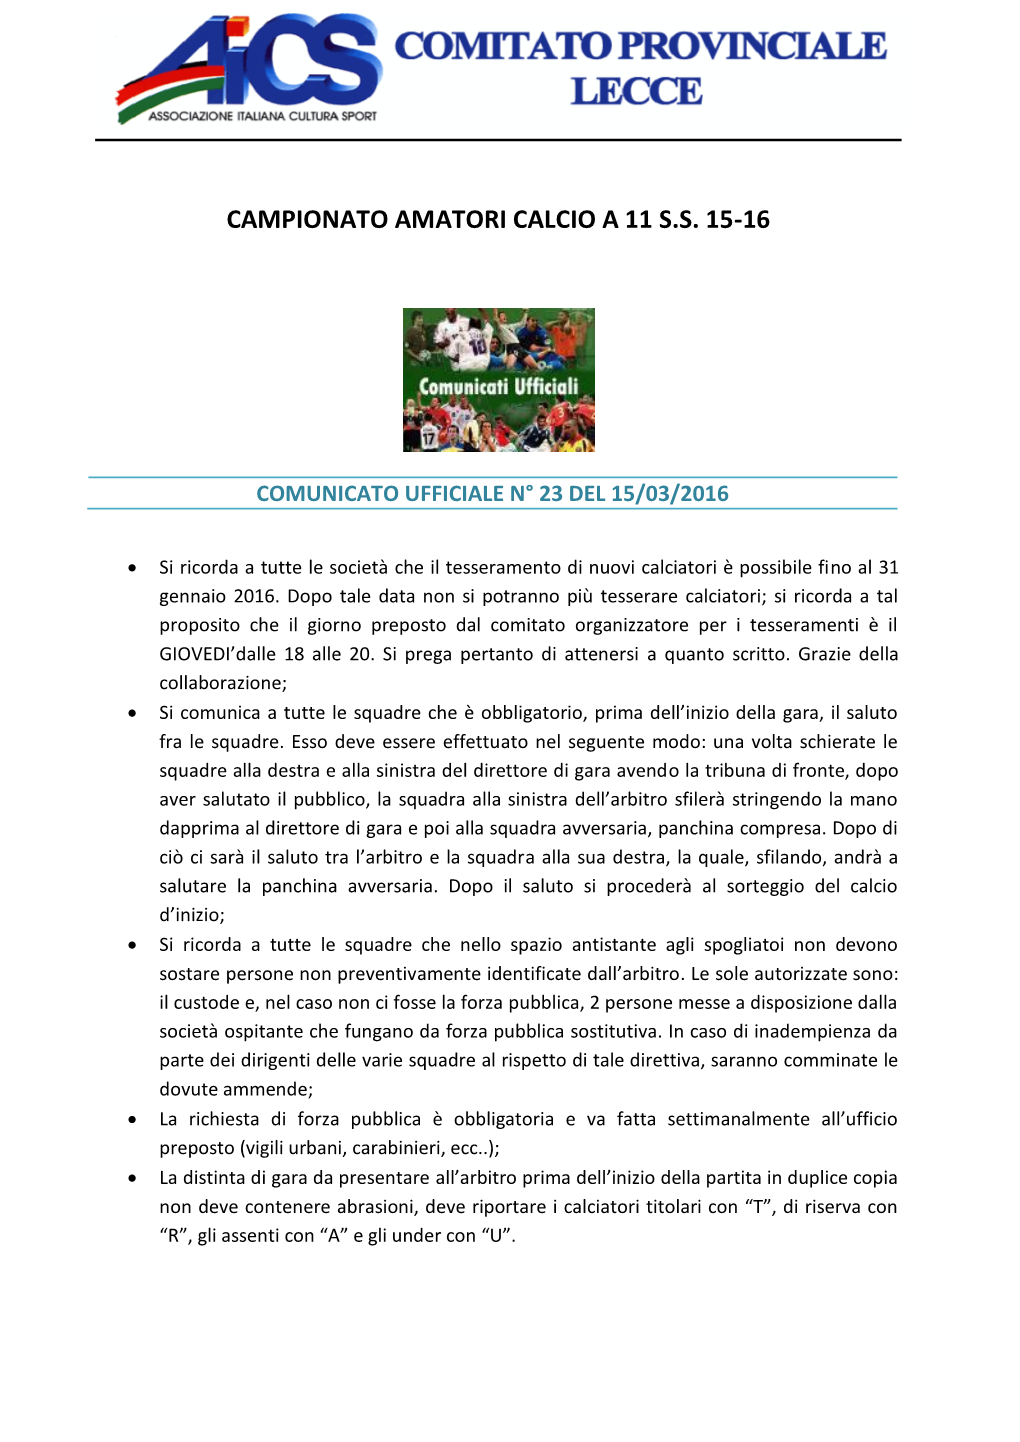 Campionato Amatori Calcio a 11 S.S. 15-16